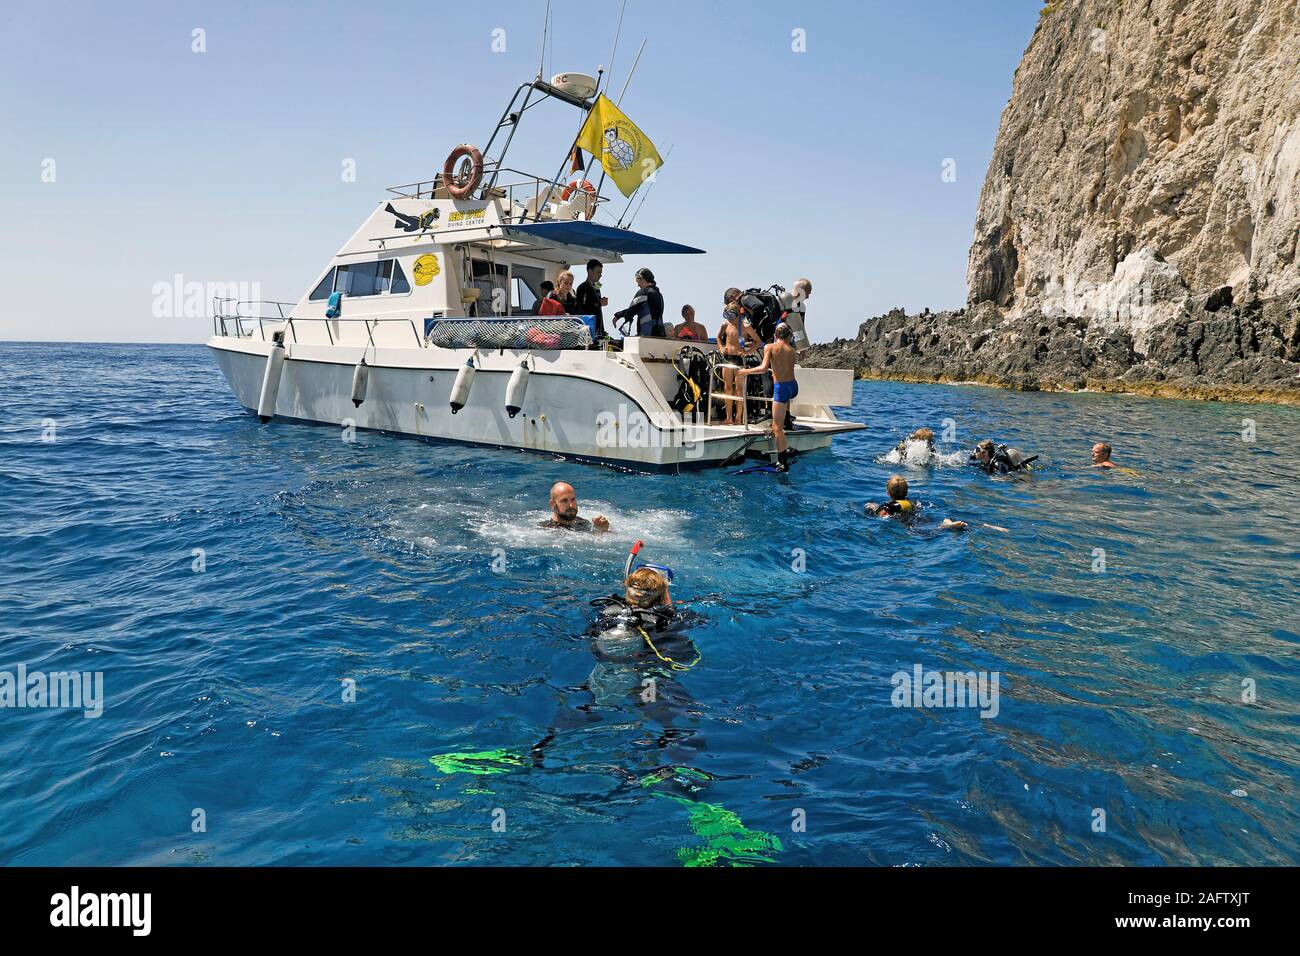 Plongée sous marine dans l'eau au bateau de plongée, l'île de Zakynthos, Grèce Banque D'Images